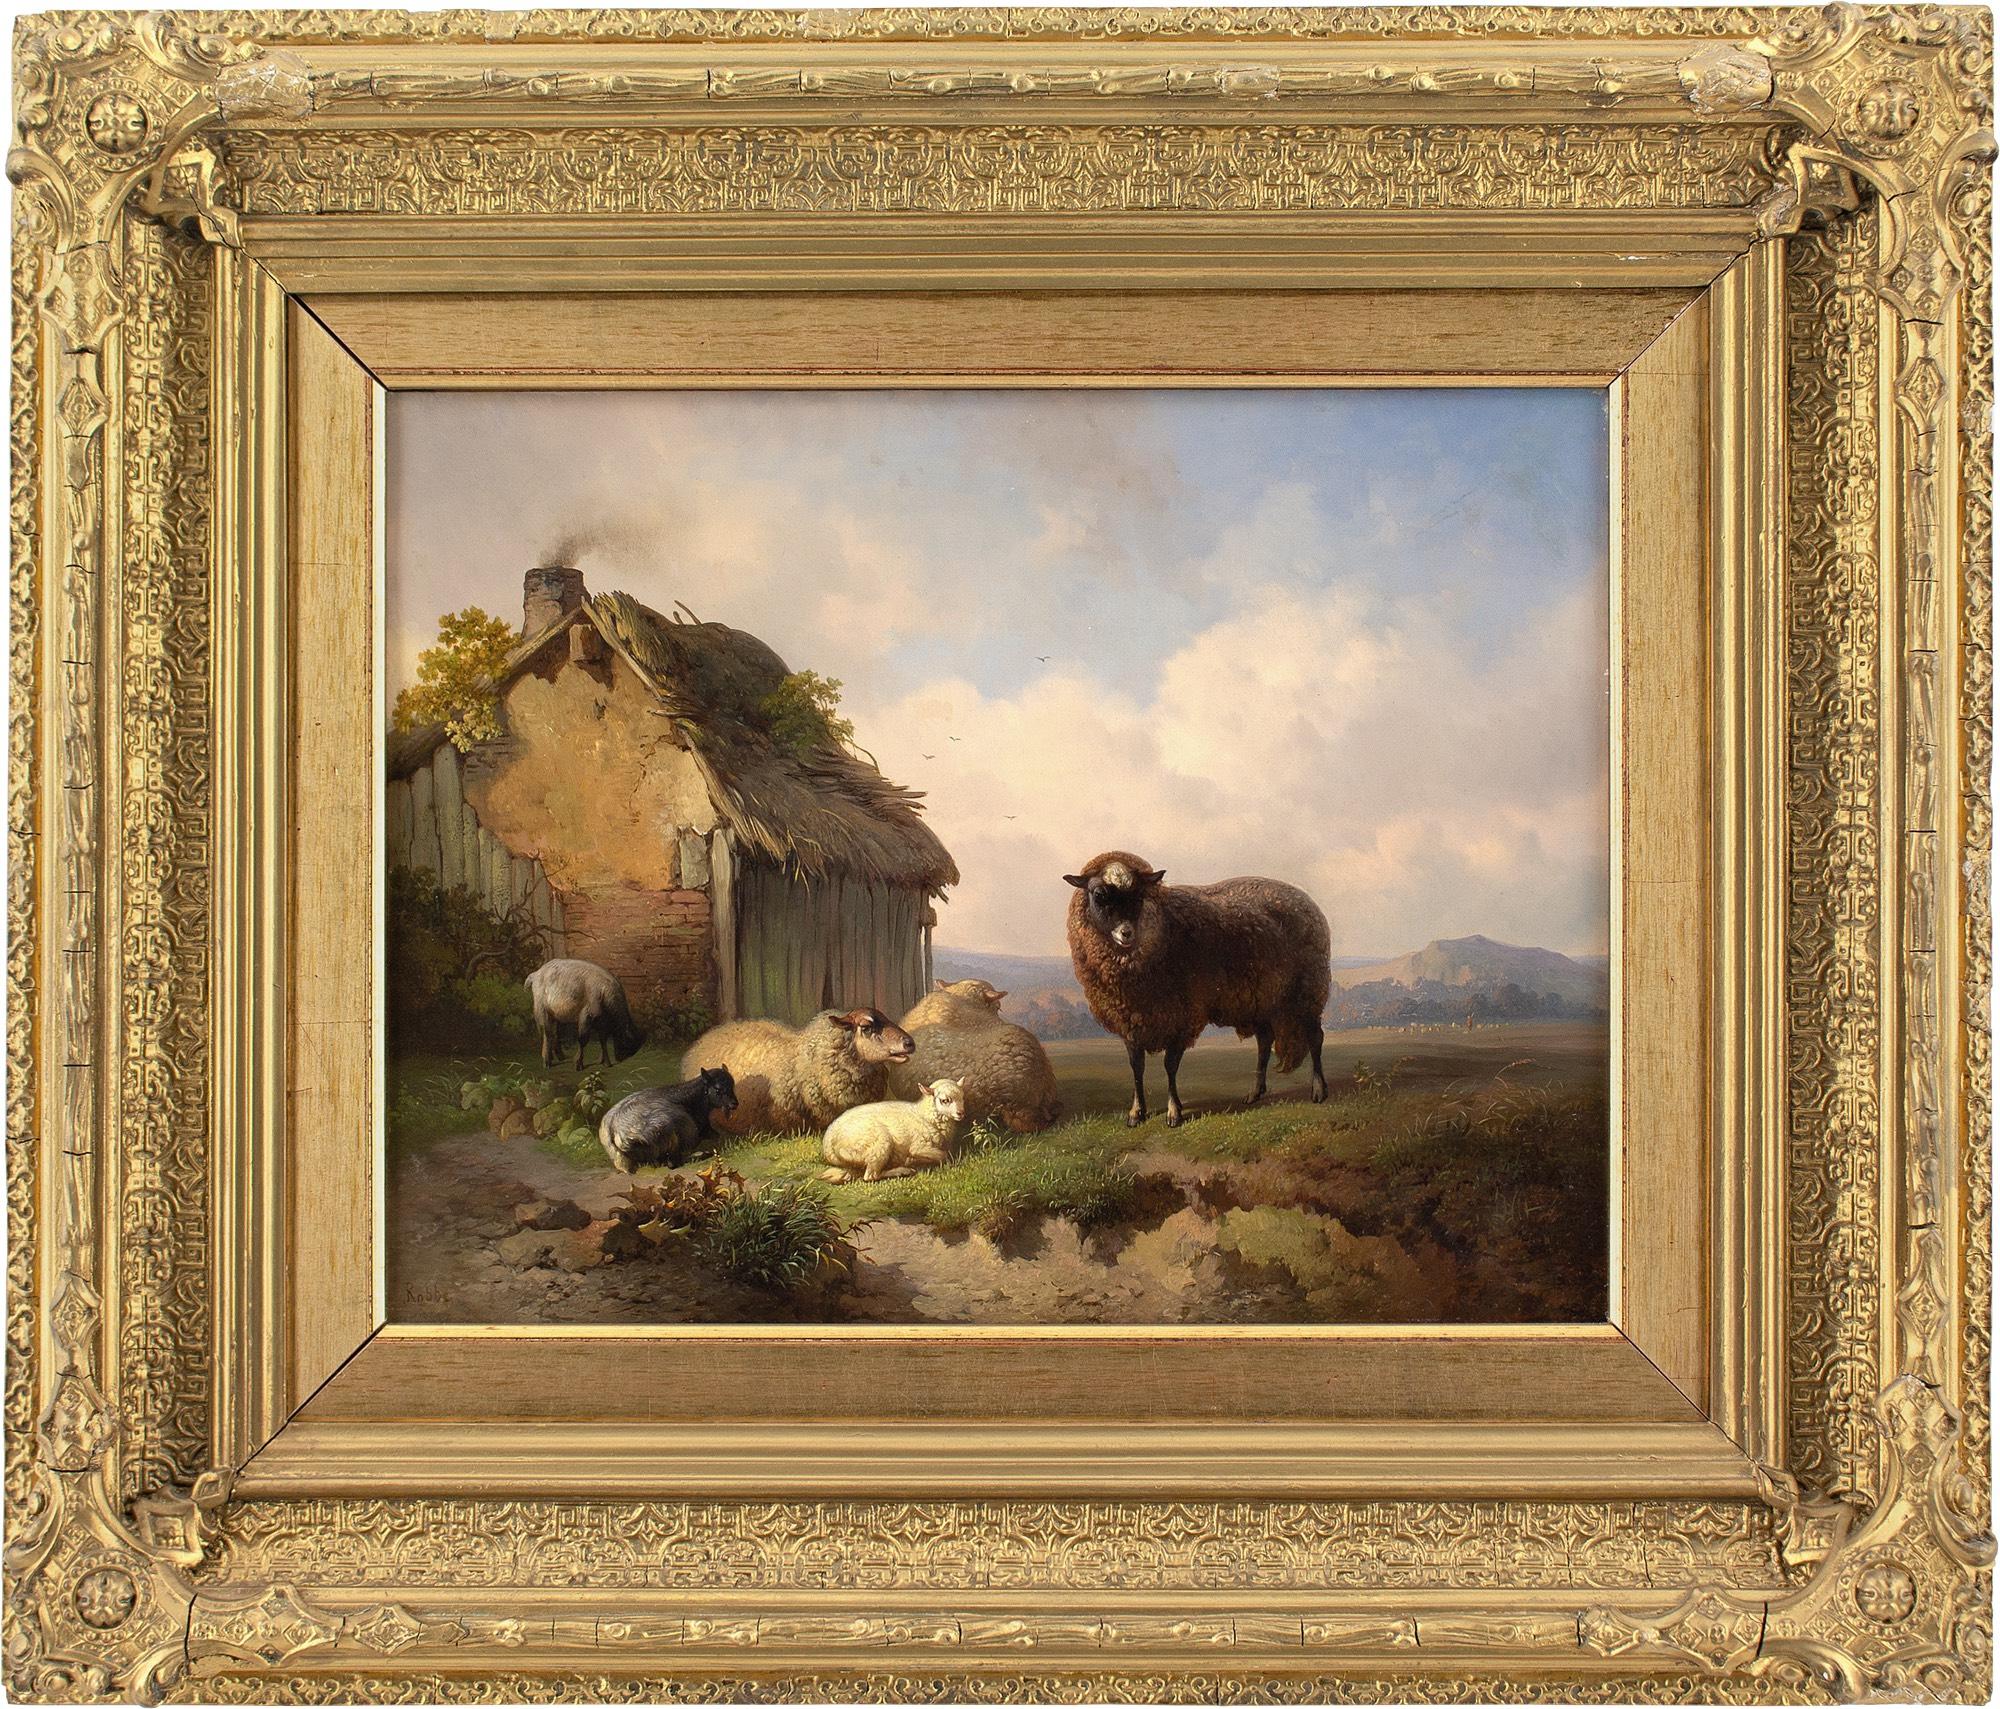 Cette exquise peinture à l'huile du milieu ou de la fin du XIXe siècle de l'artiste belge Louis Robbe (1806-1887) représente trois moutons, un agneau et deux chèvres finement rendus devant un paysage de collines lointaines. C'est une œuvre